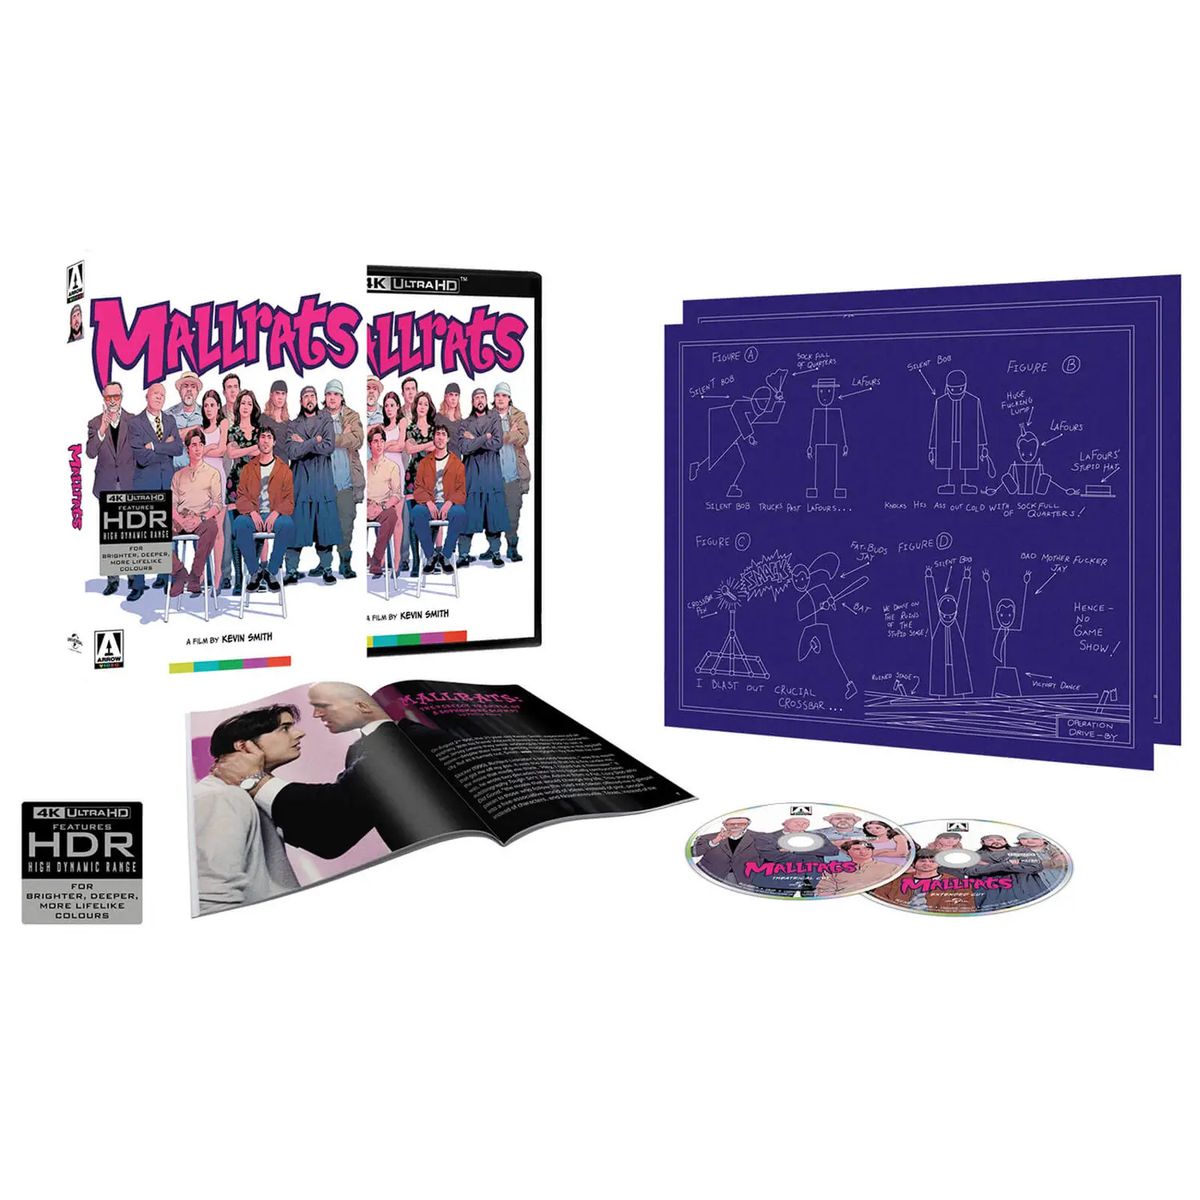 מהדורה מיוחדת של סרטון Mallrats from Arrow הכוללת מספר Blu-rays, חוברת ותרשים של ג'יי ובוב השקט.